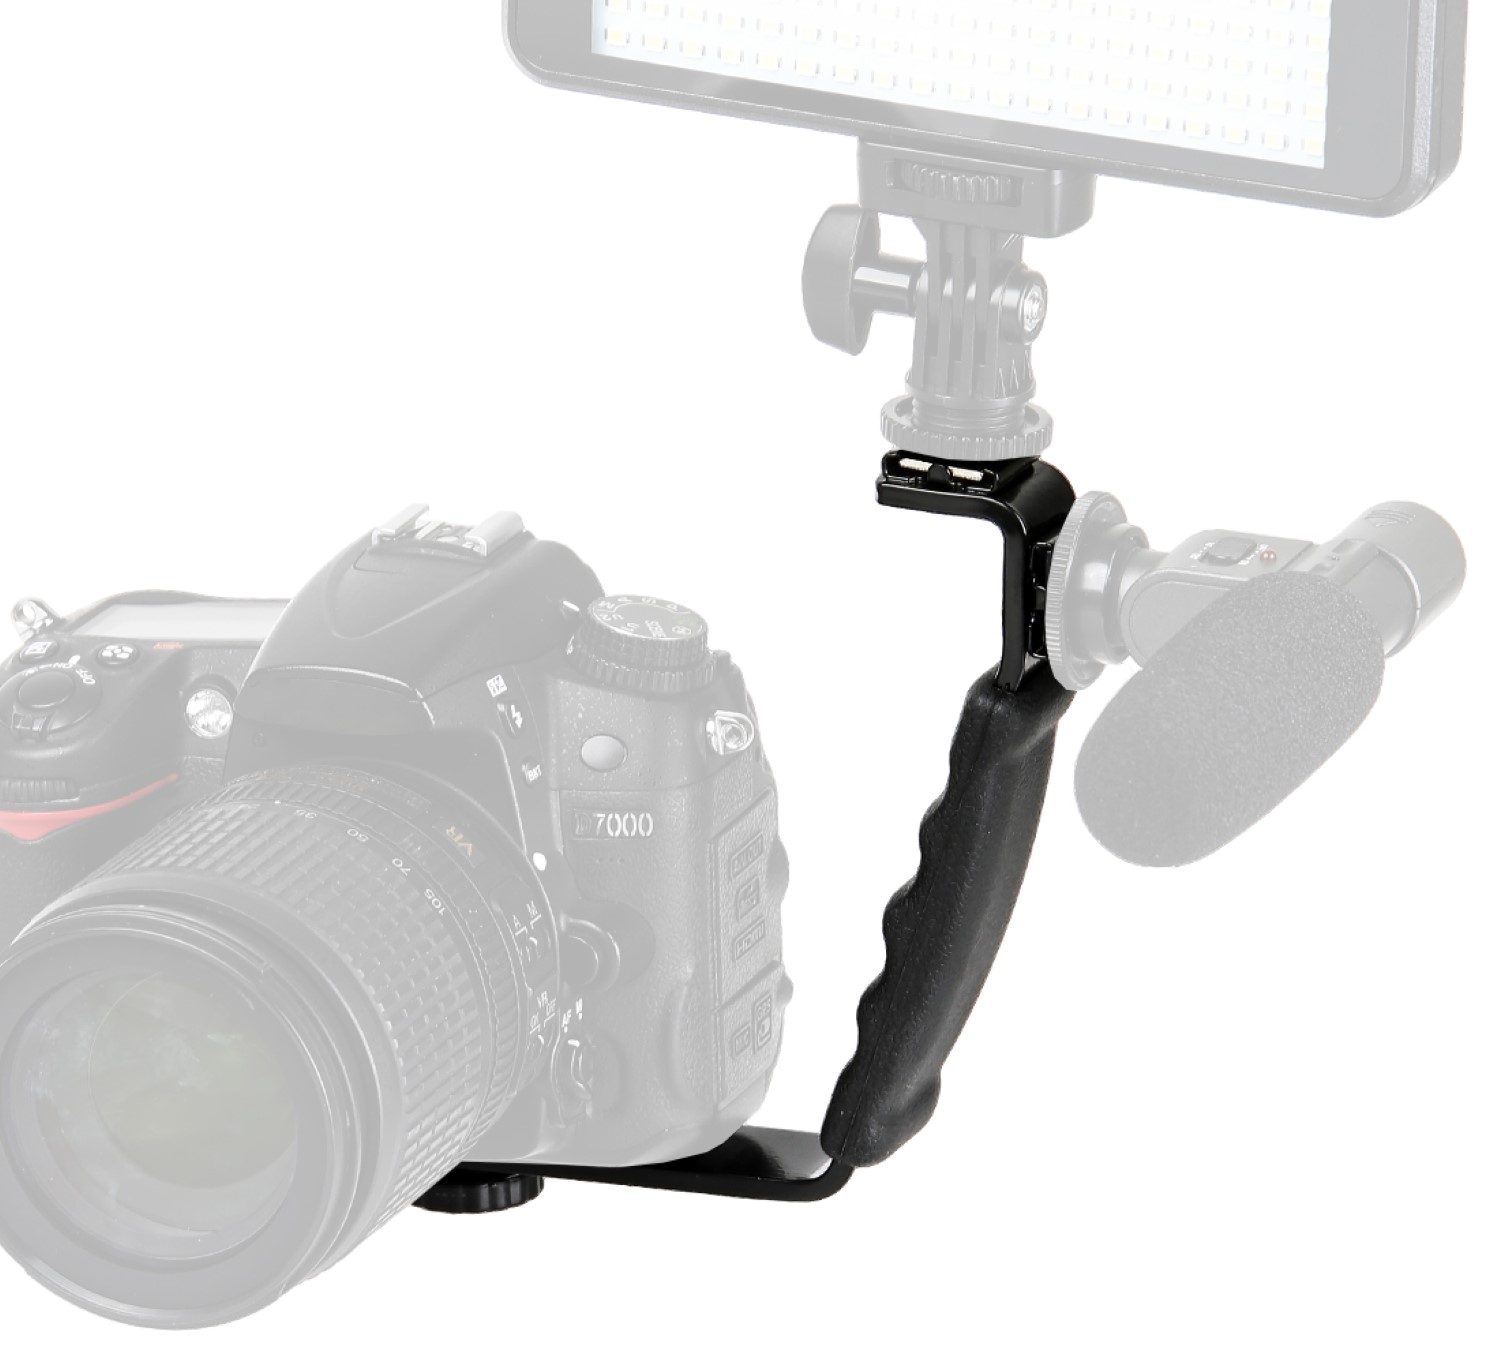 Blitzlichthalter in L-Form passt für die meisten Kameras und Camcorder. Bequemer Handgriff LS-37